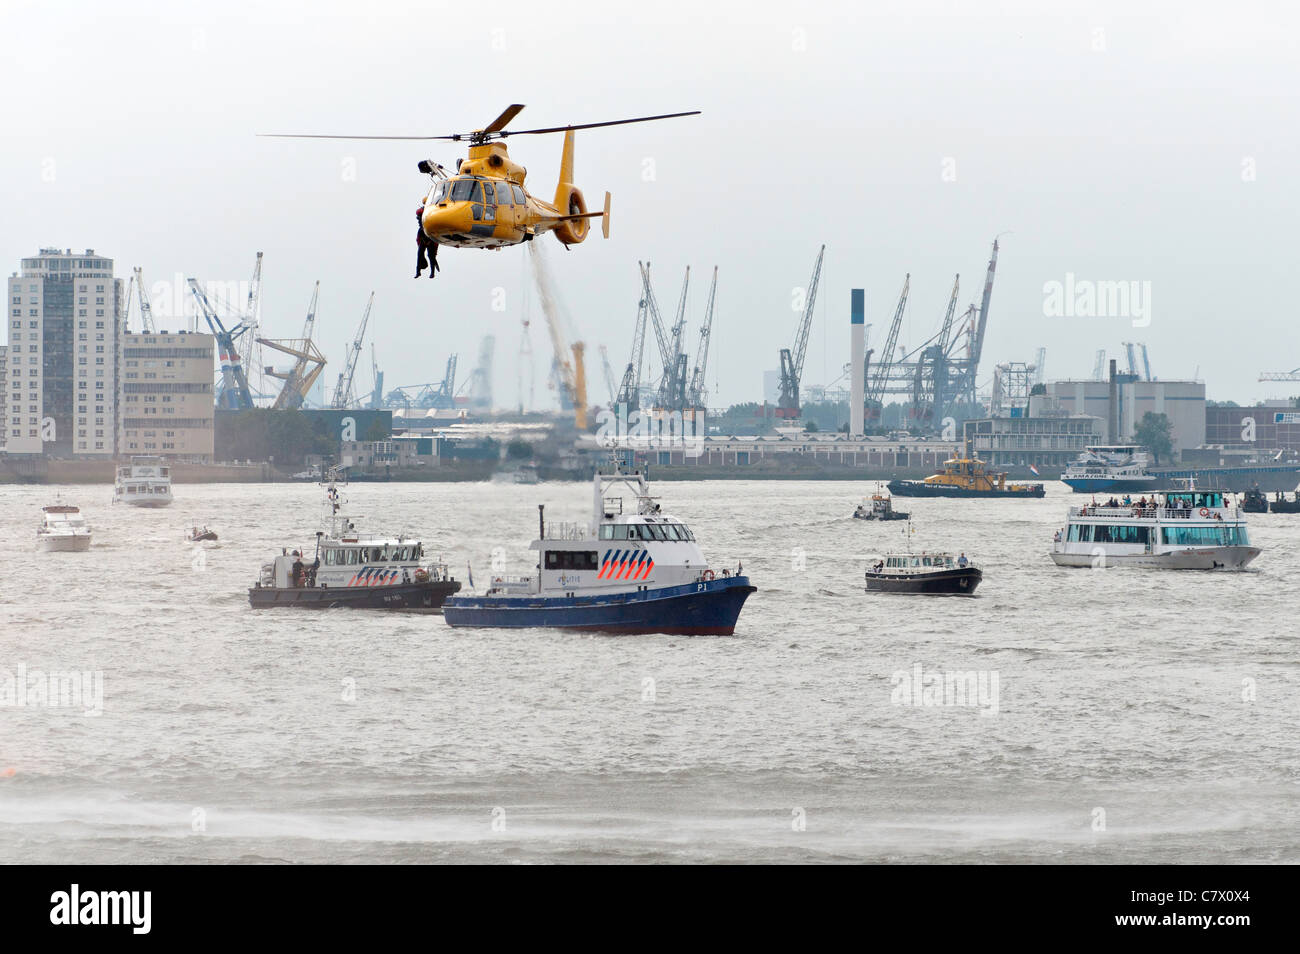 Dimostrazione di un'operazione di salvataggio con un elicottero nel porto di Rotterdam. Foto Stock